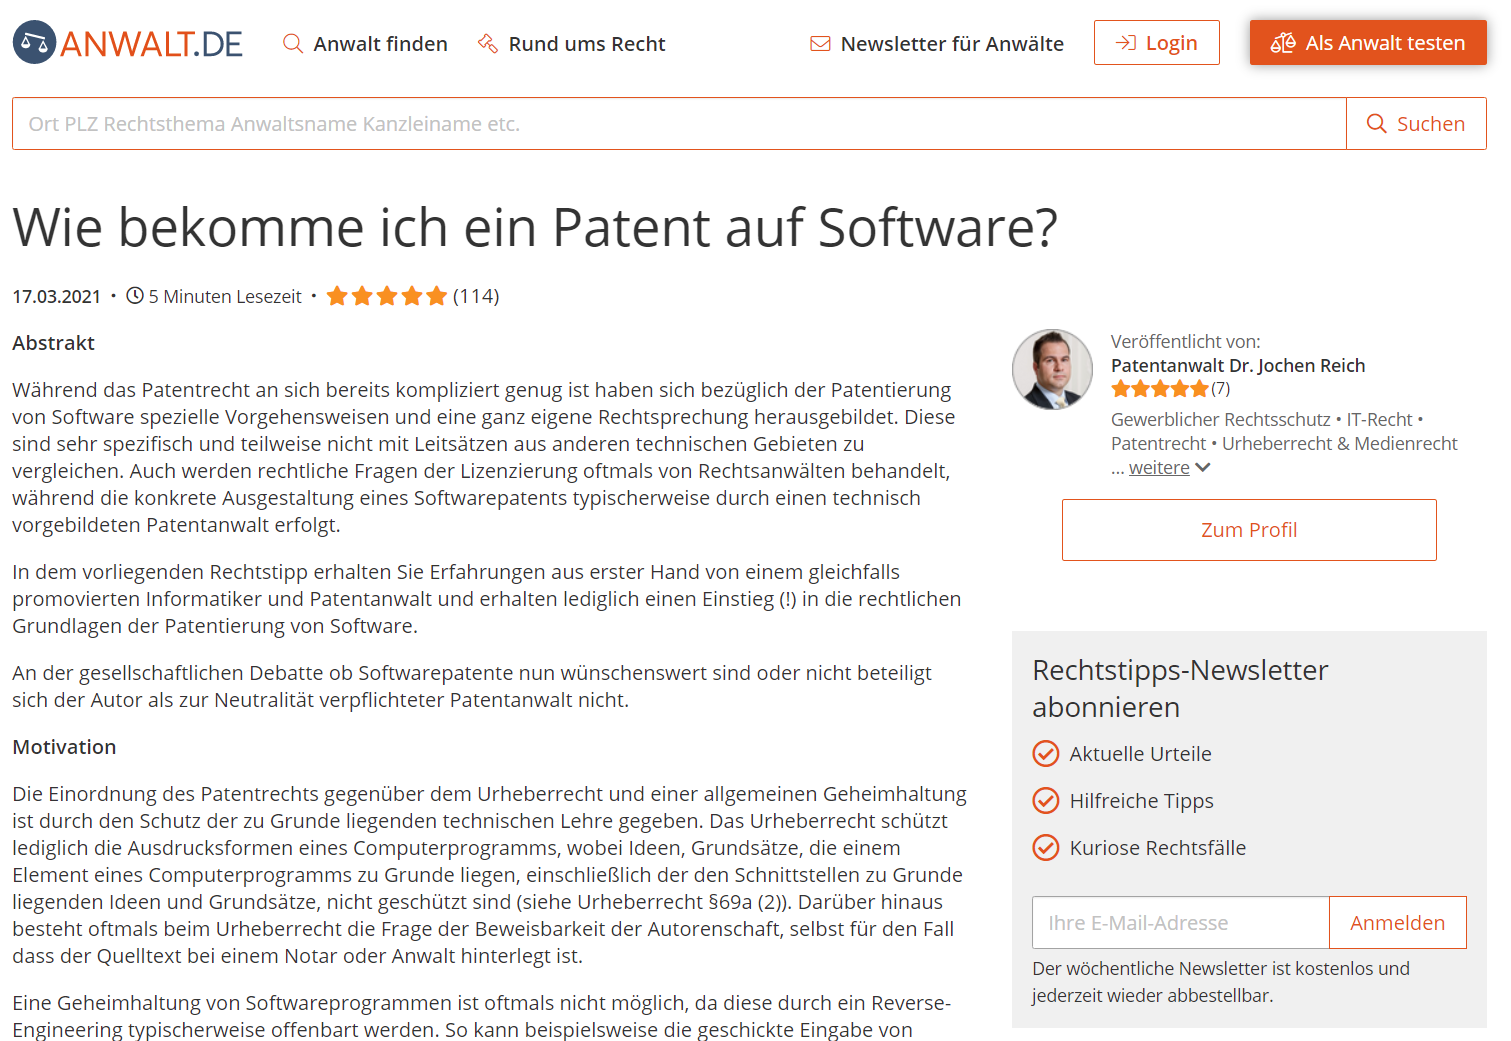 Wie bekomme ich ein Patent auf Software?